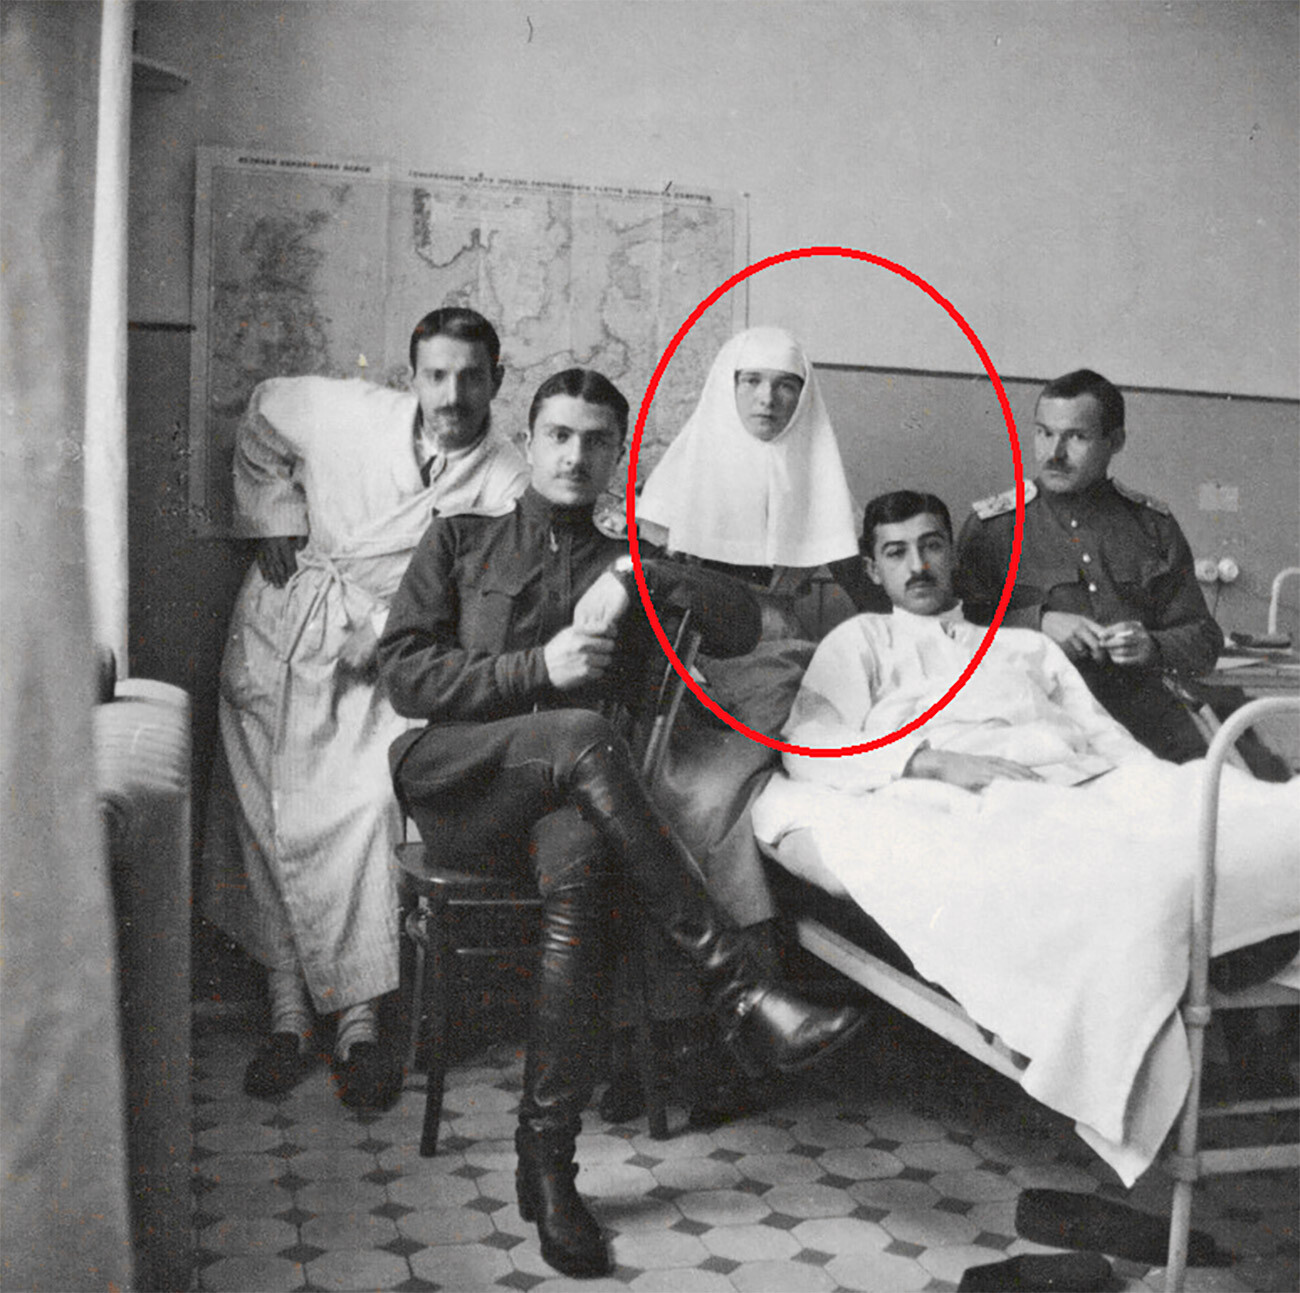 Olga e Dmitrij Chakh-Bagov nell’ospedale militare per ufficiali durante la Prima guerra mondiale

